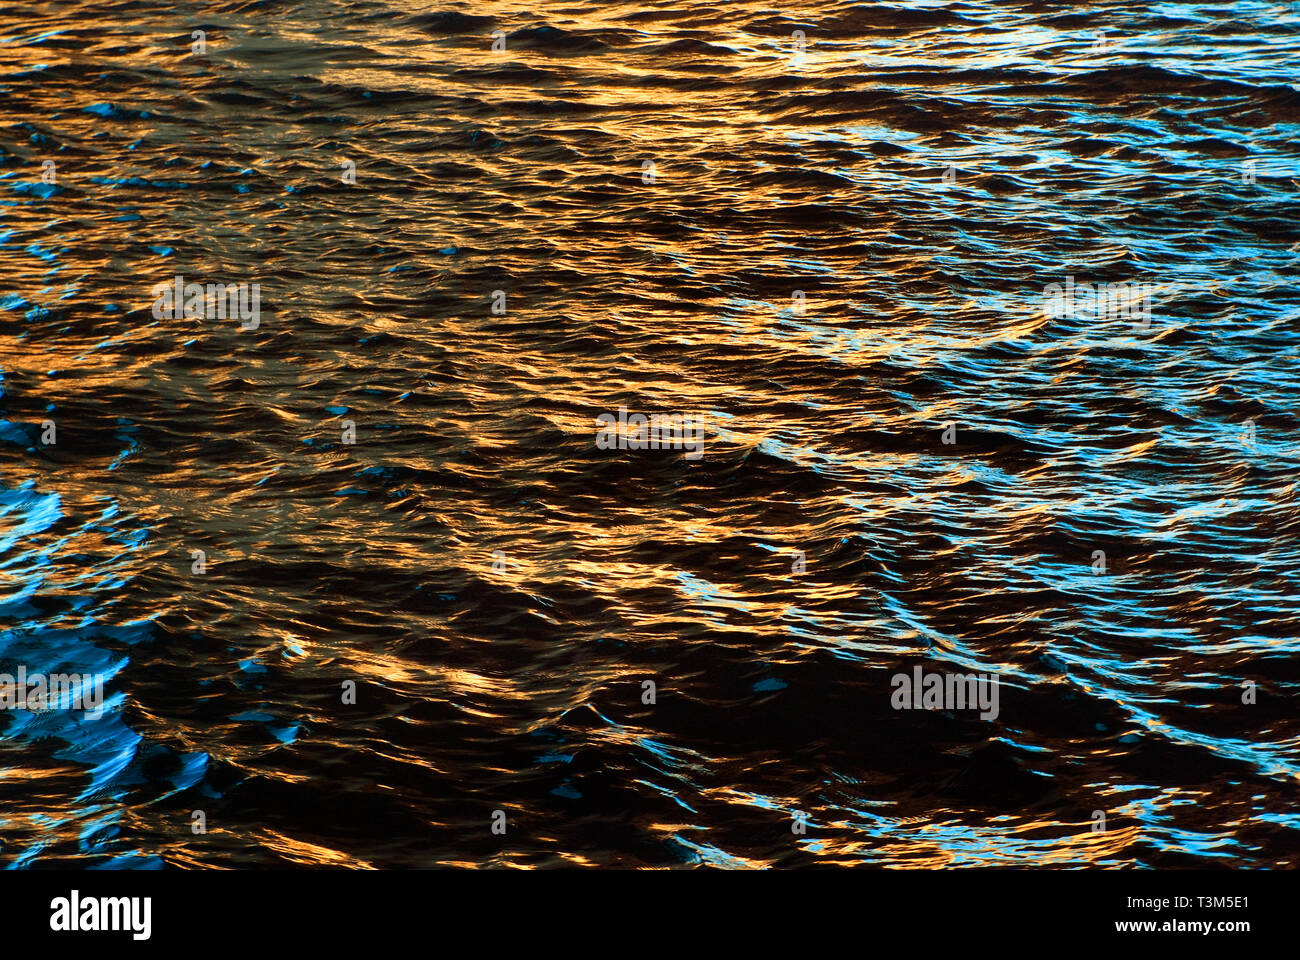 Le soleil se couche sur l'eau, rendant les ondulations d'or, le 12 novembre 2009, à Orange Beach, Alabama. Banque D'Images